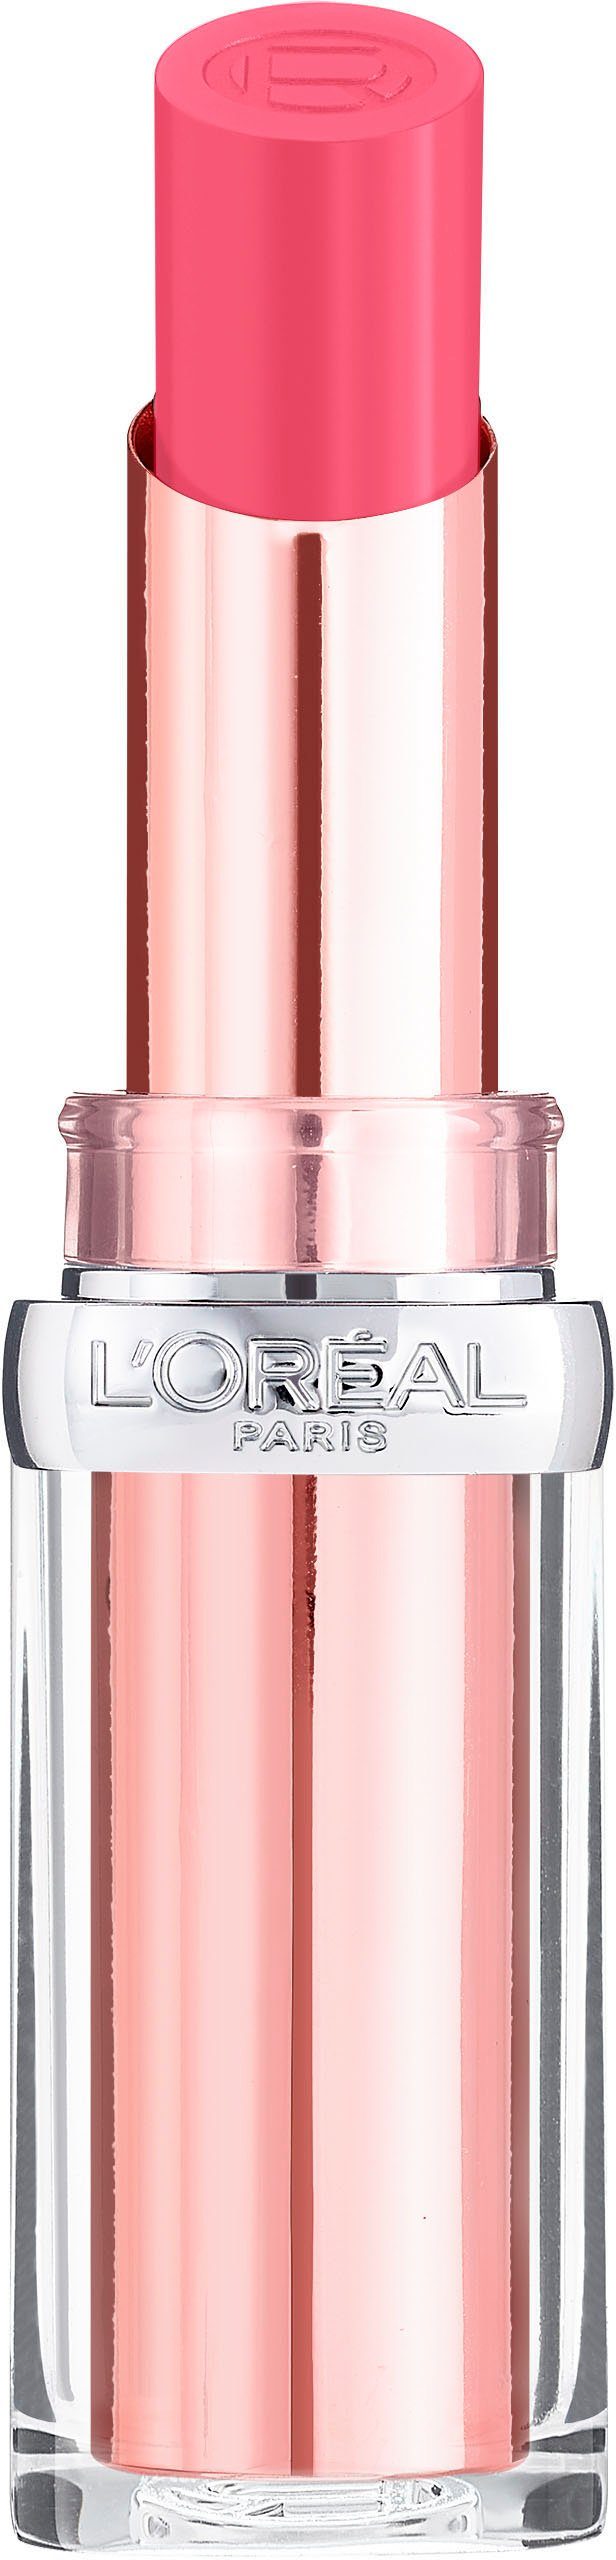 Color Wonderland Paradise Lippenstift L'ORÉAL 111 Pink Glow PARIS Riche